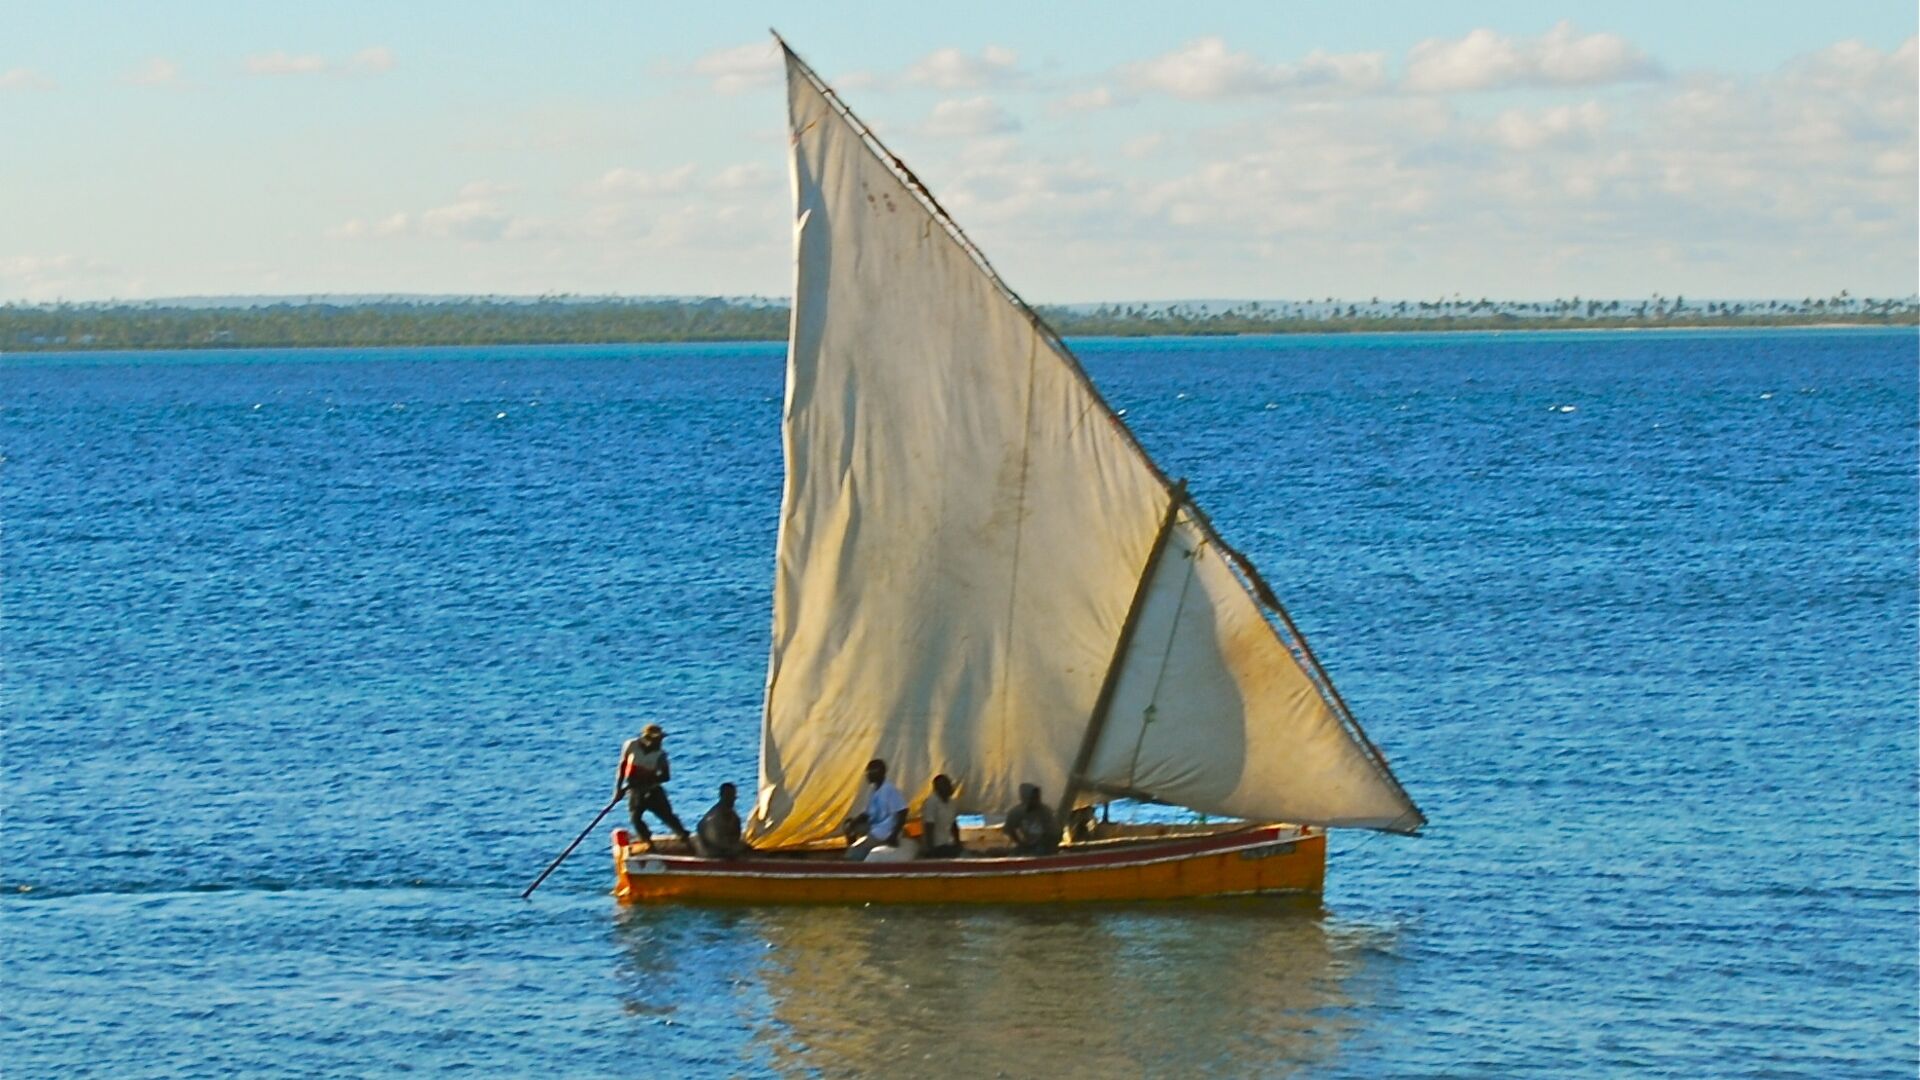 Կապույտ Խաղաղություն. dhow-ը Մոզամբիկի տիպիկ նավ է, շատ ակտիվ ազգ ջրի պաշտպանության հարցում